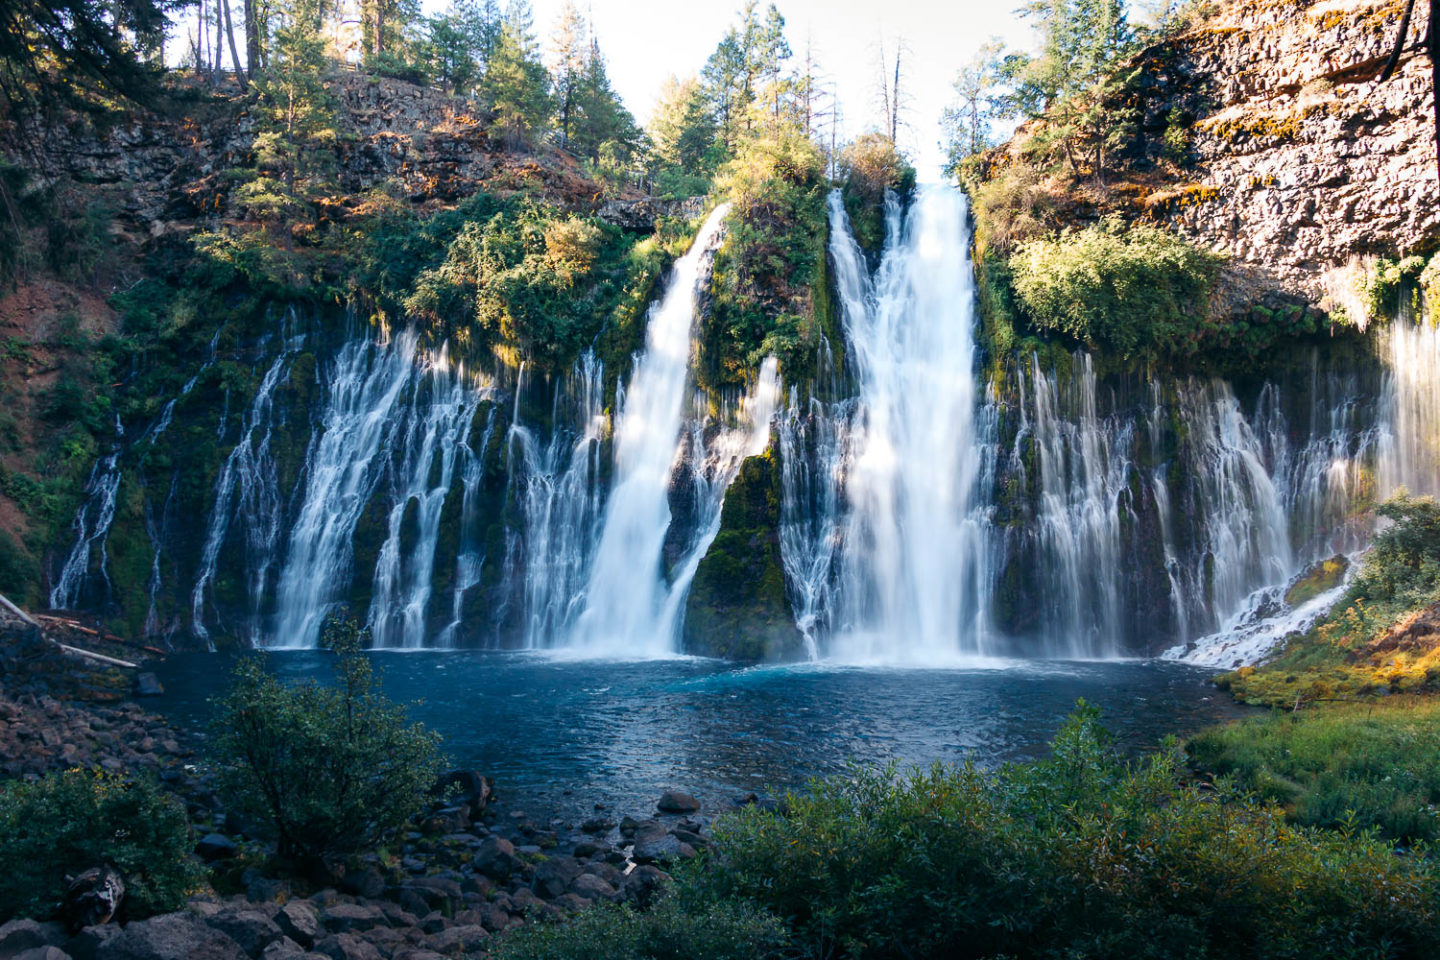 Visit Burney Falls, Northern California - Oregon road trip - Roads and Destinations